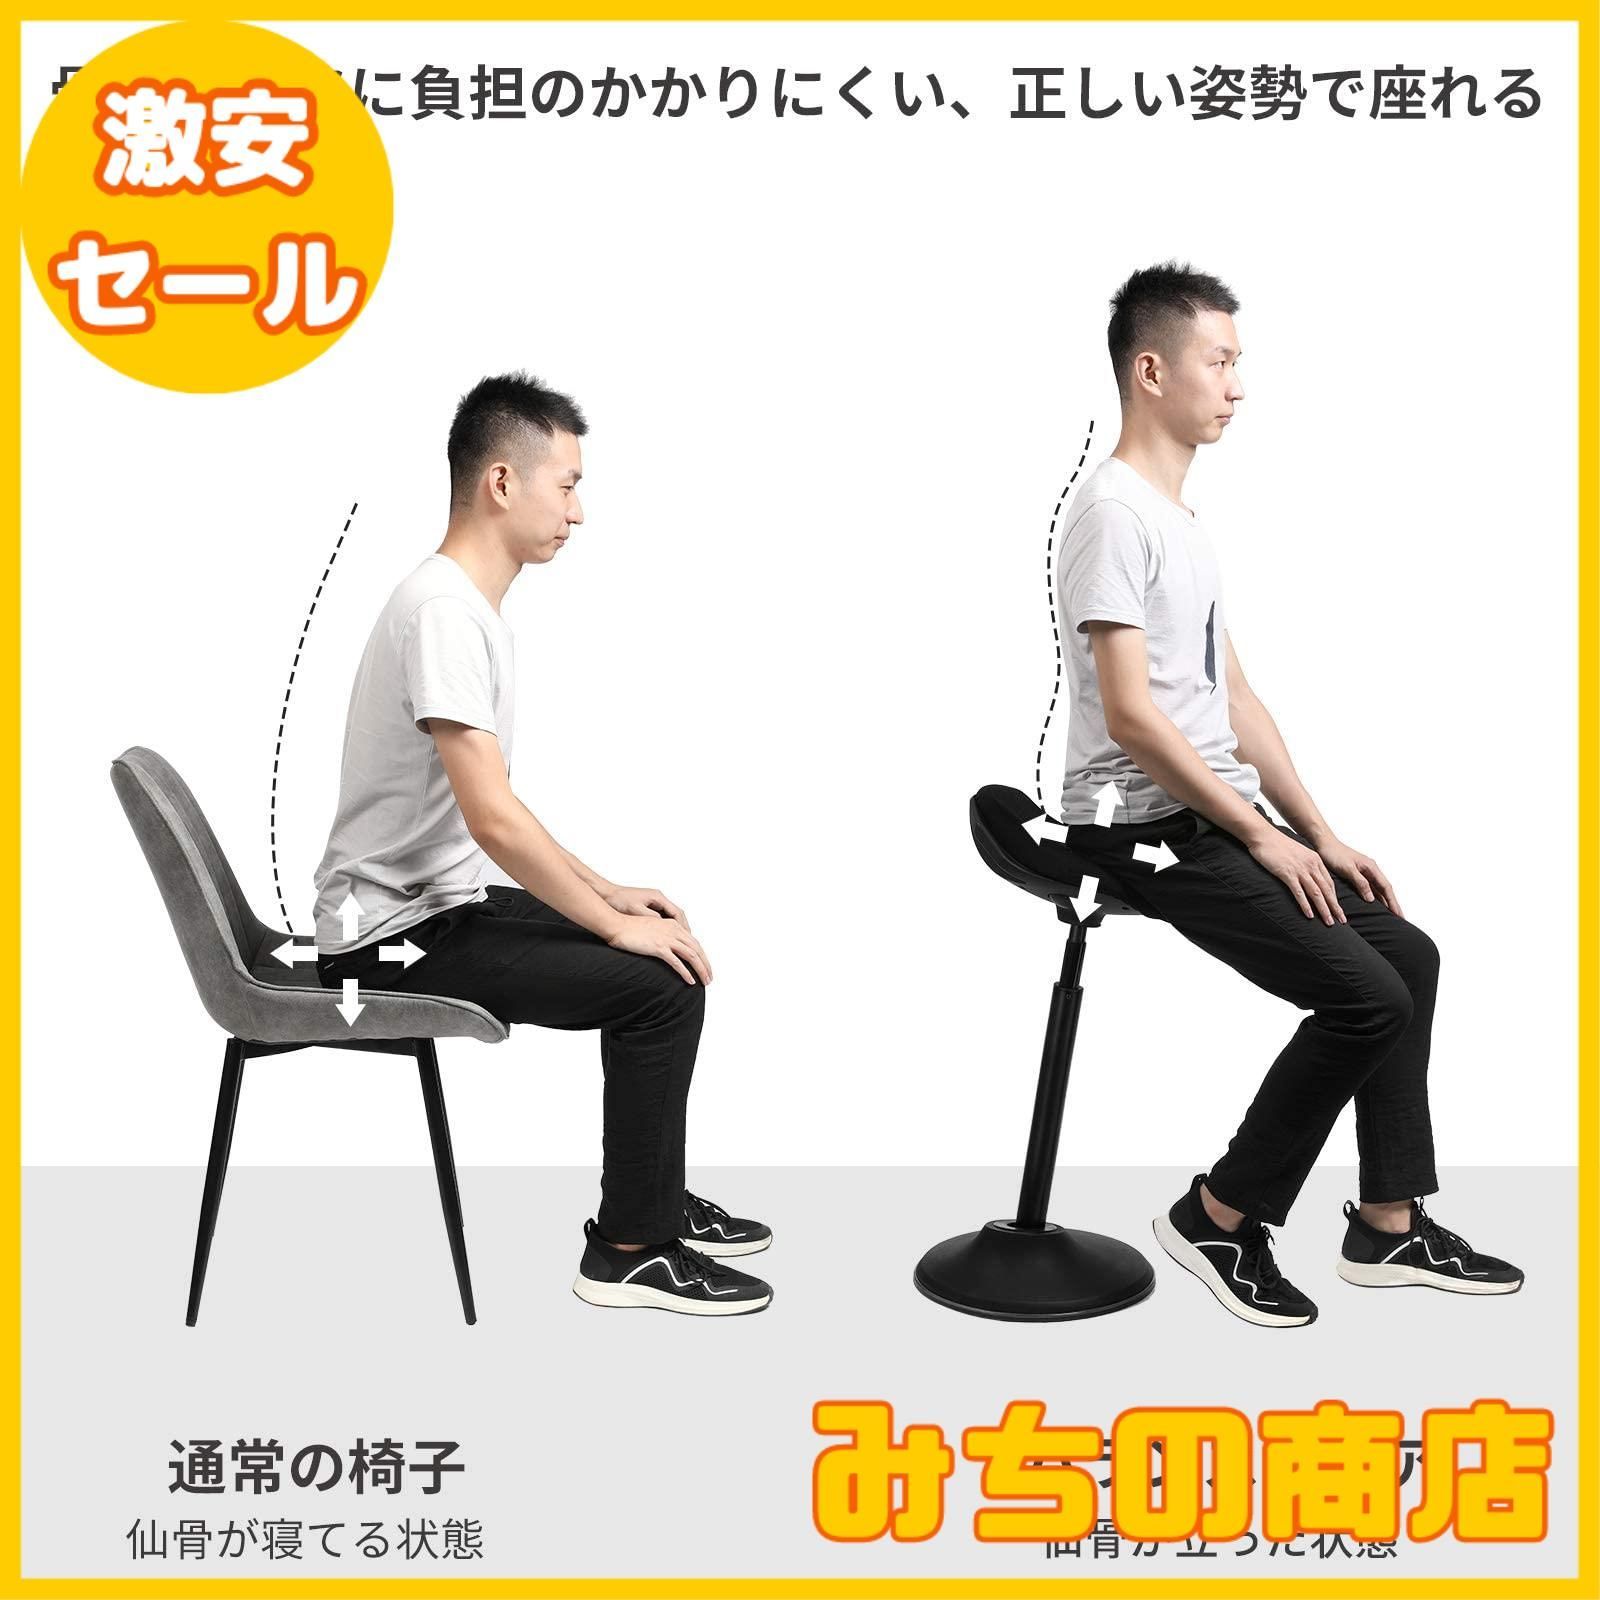 【数量限定】SONGMICS デスクチェア 組立簡単 バランスチェア 姿勢矯正 腰痛対策 昇降機能付き オフィスチェア オシャレ 事務椅子 テレワーク  高さ52~66.5cm OSC002B02